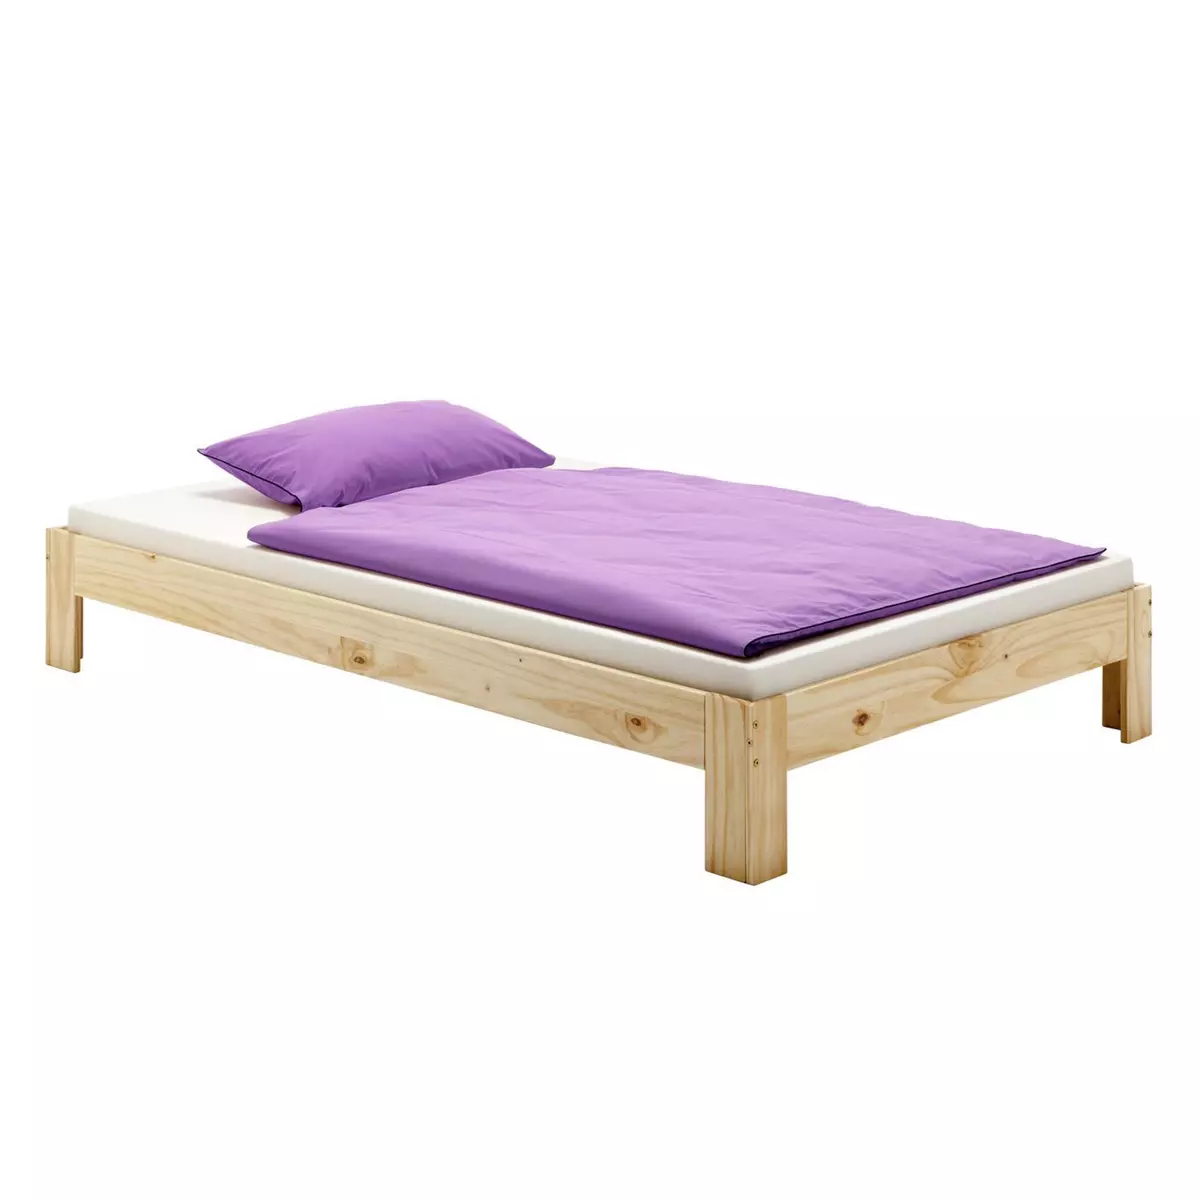 IDIMEX Lit futon THOMAS couchage double 140 x 190 cm 2 places / 2 personnes, en pin massif vernis naturel